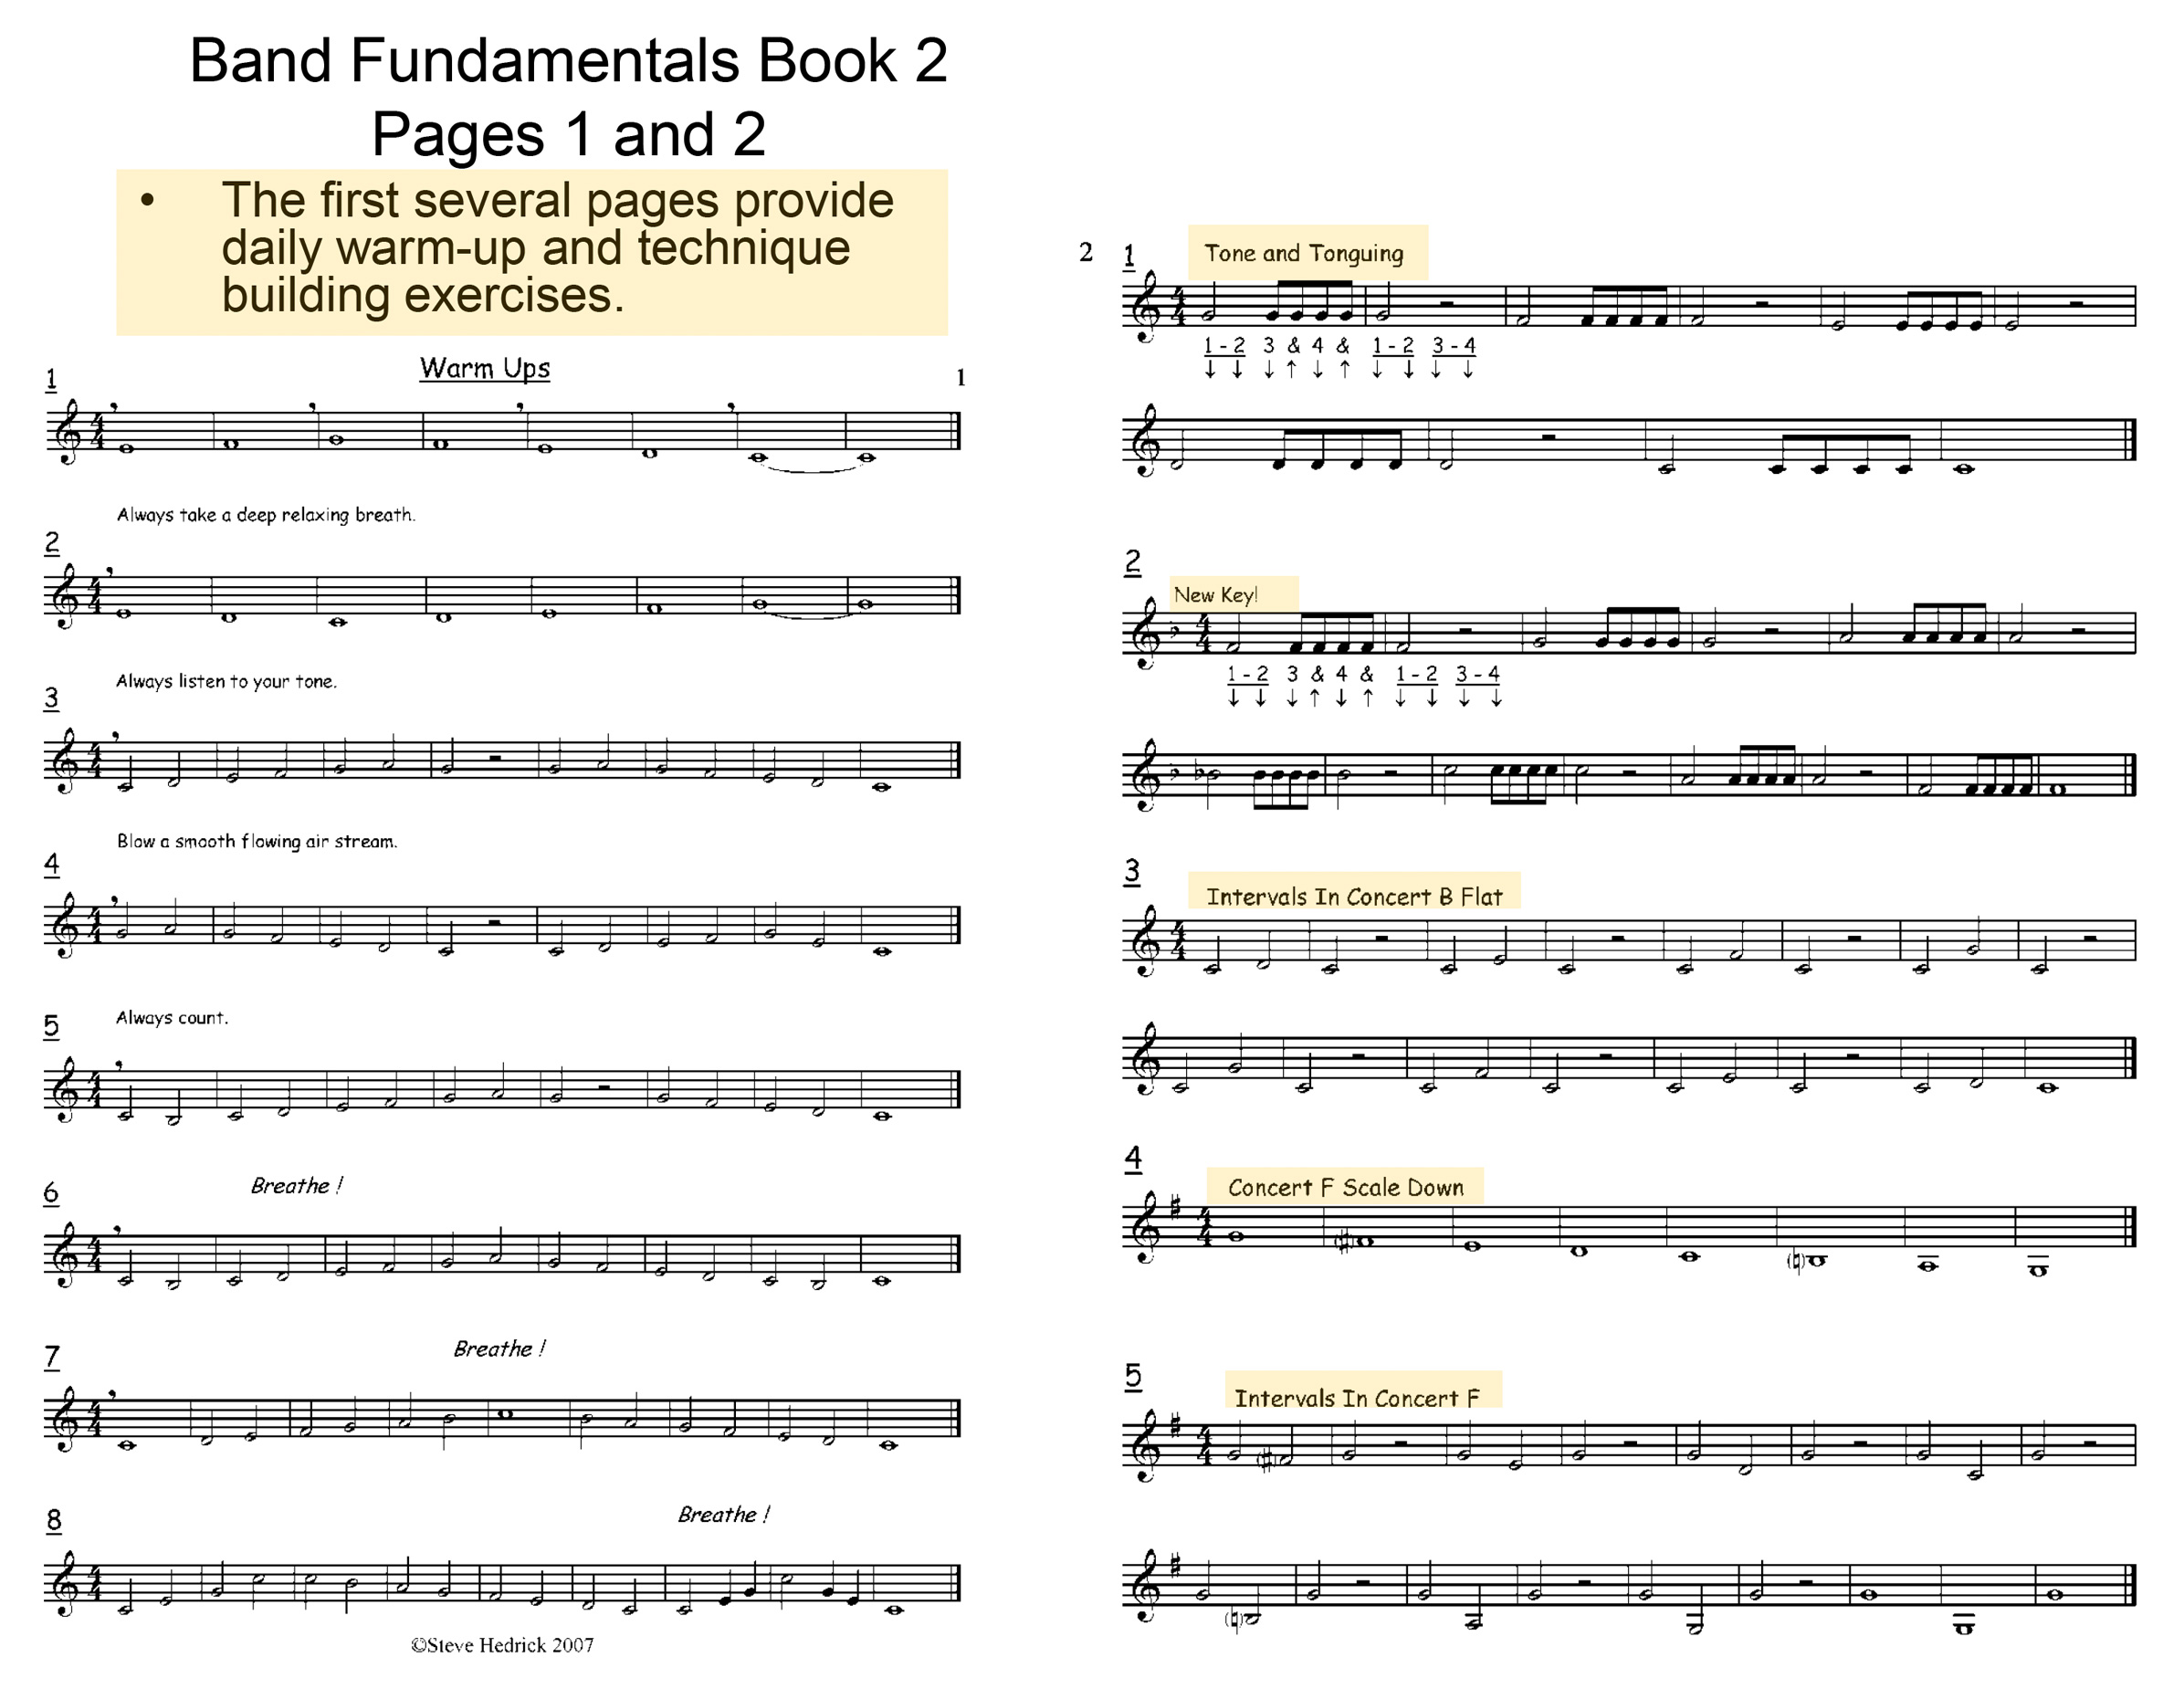 Band Fundamentals Book 2 Sample Page